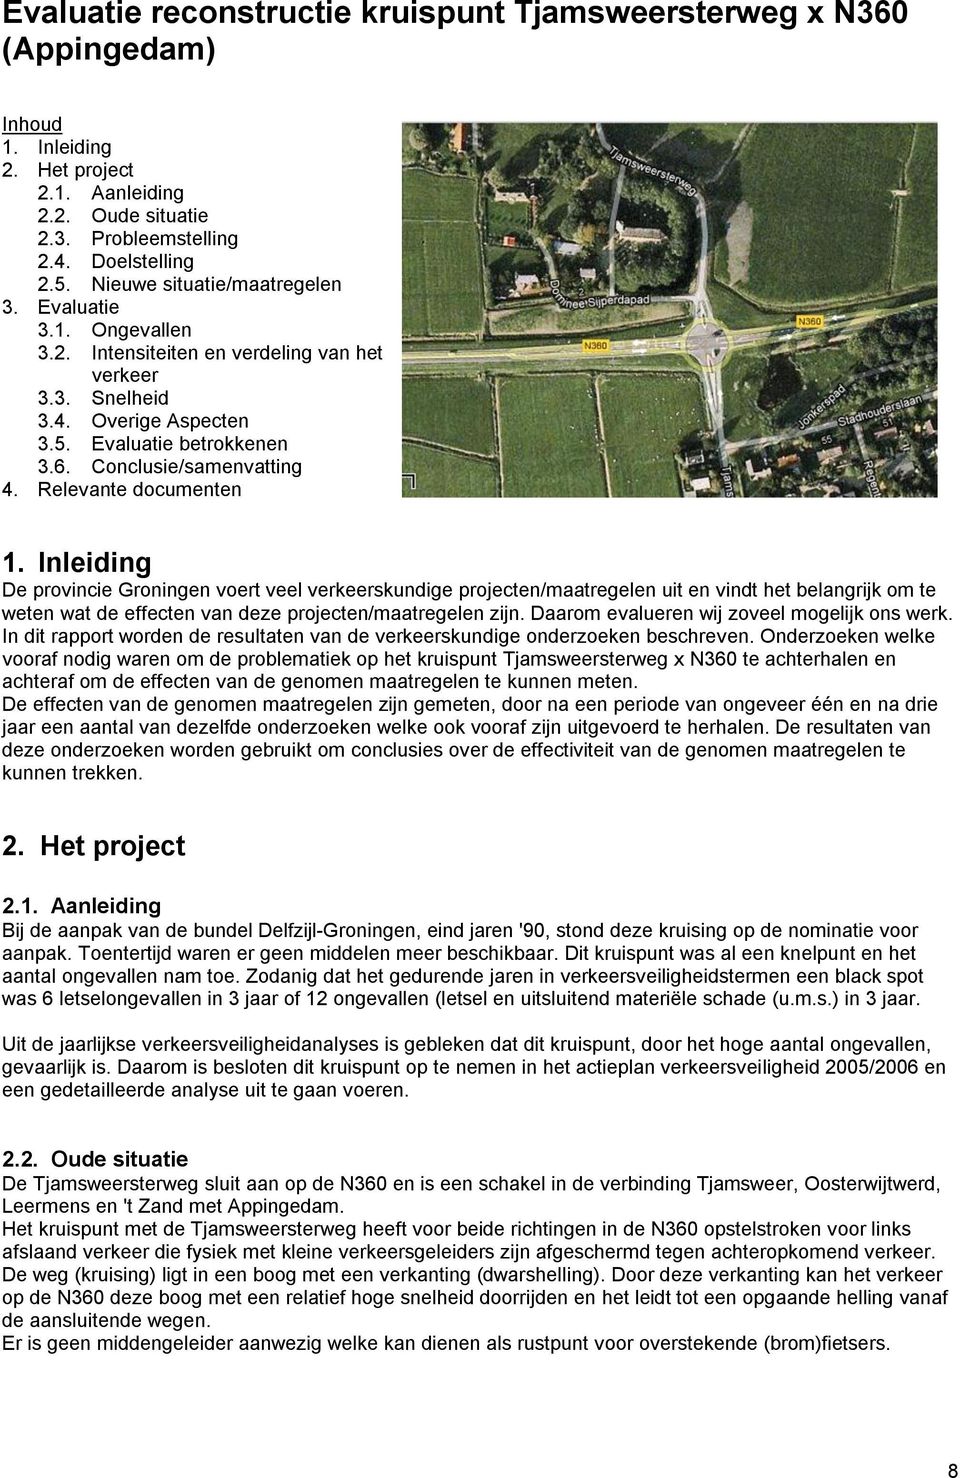 Relevante documenten 1. Inleiding De provincie Groningen voert veel verkeerskundige projecten/maatregelen uit en vindt het belangrijk om te weten wat de effecten van deze projecten/maatregelen zijn.